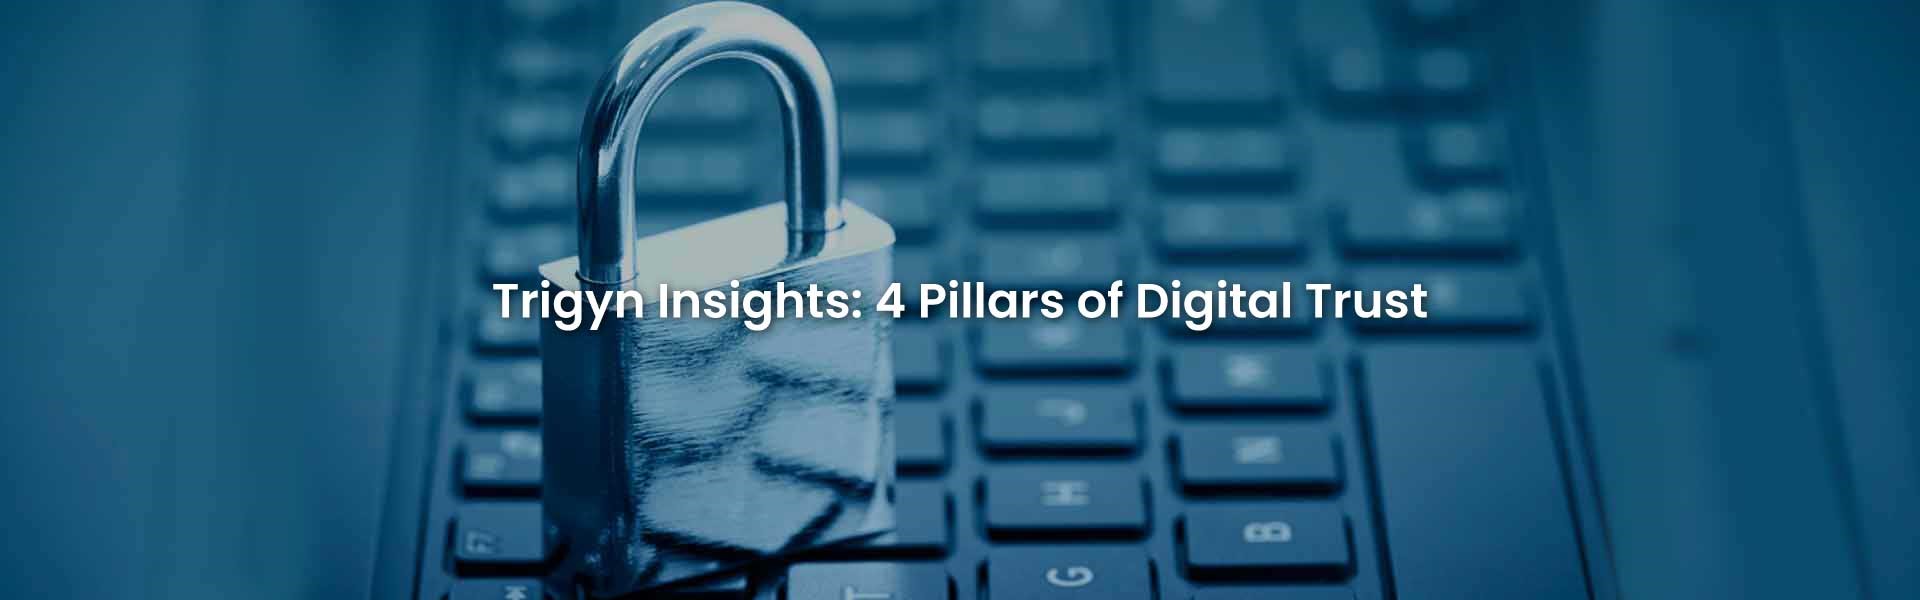 Pillars of Digital Trust